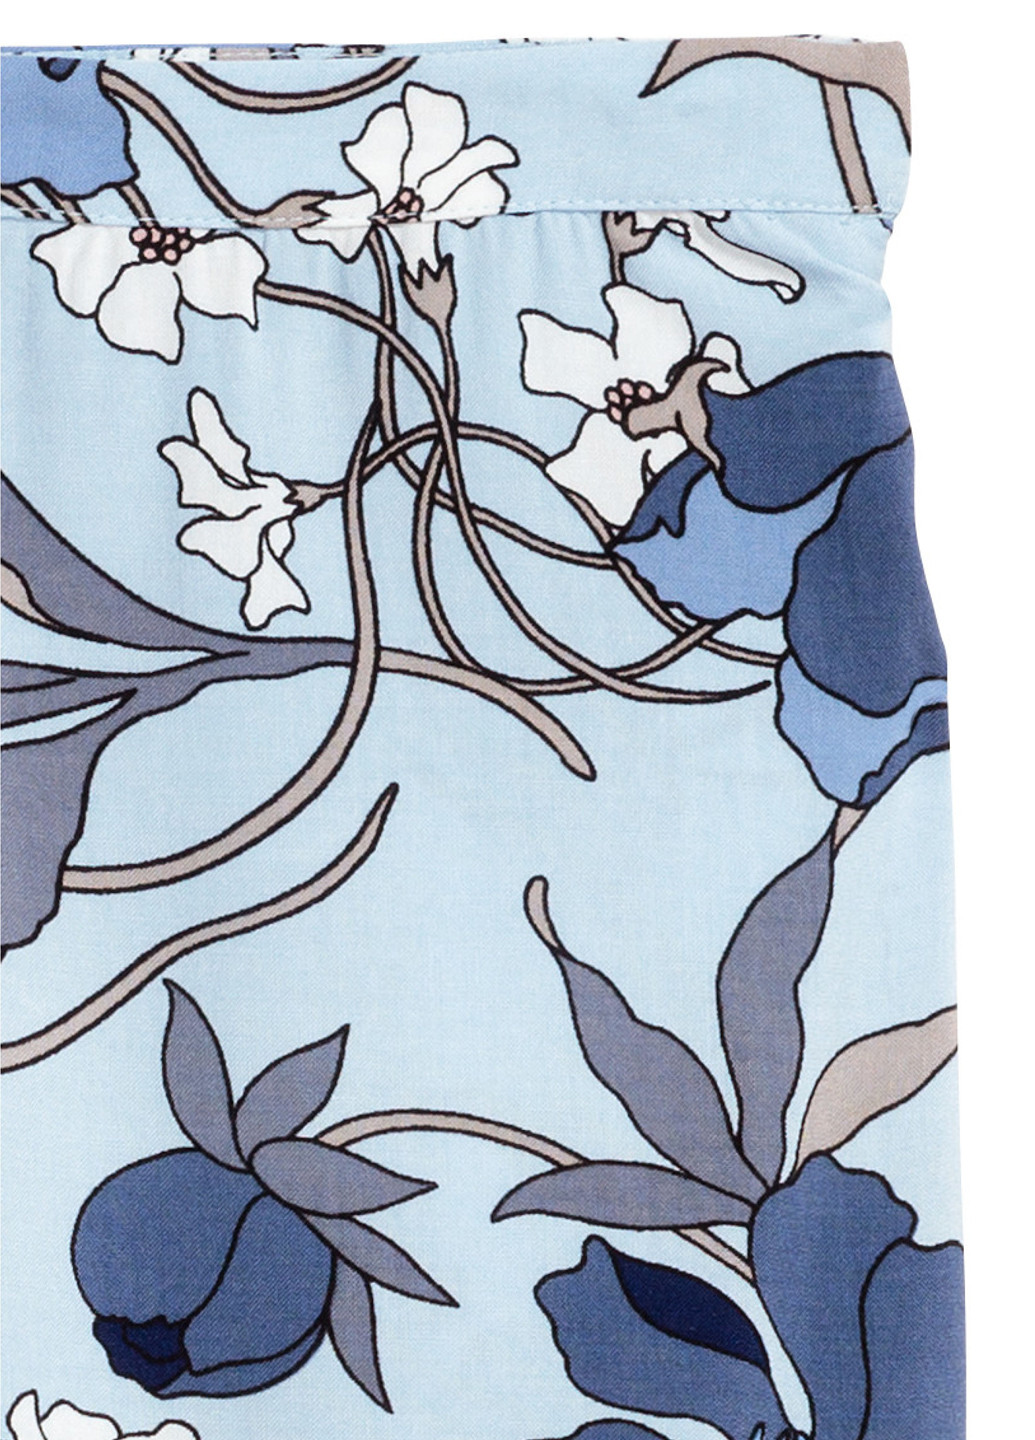 Голубая кэжуал цветочной расцветки юбка H&M клешированная